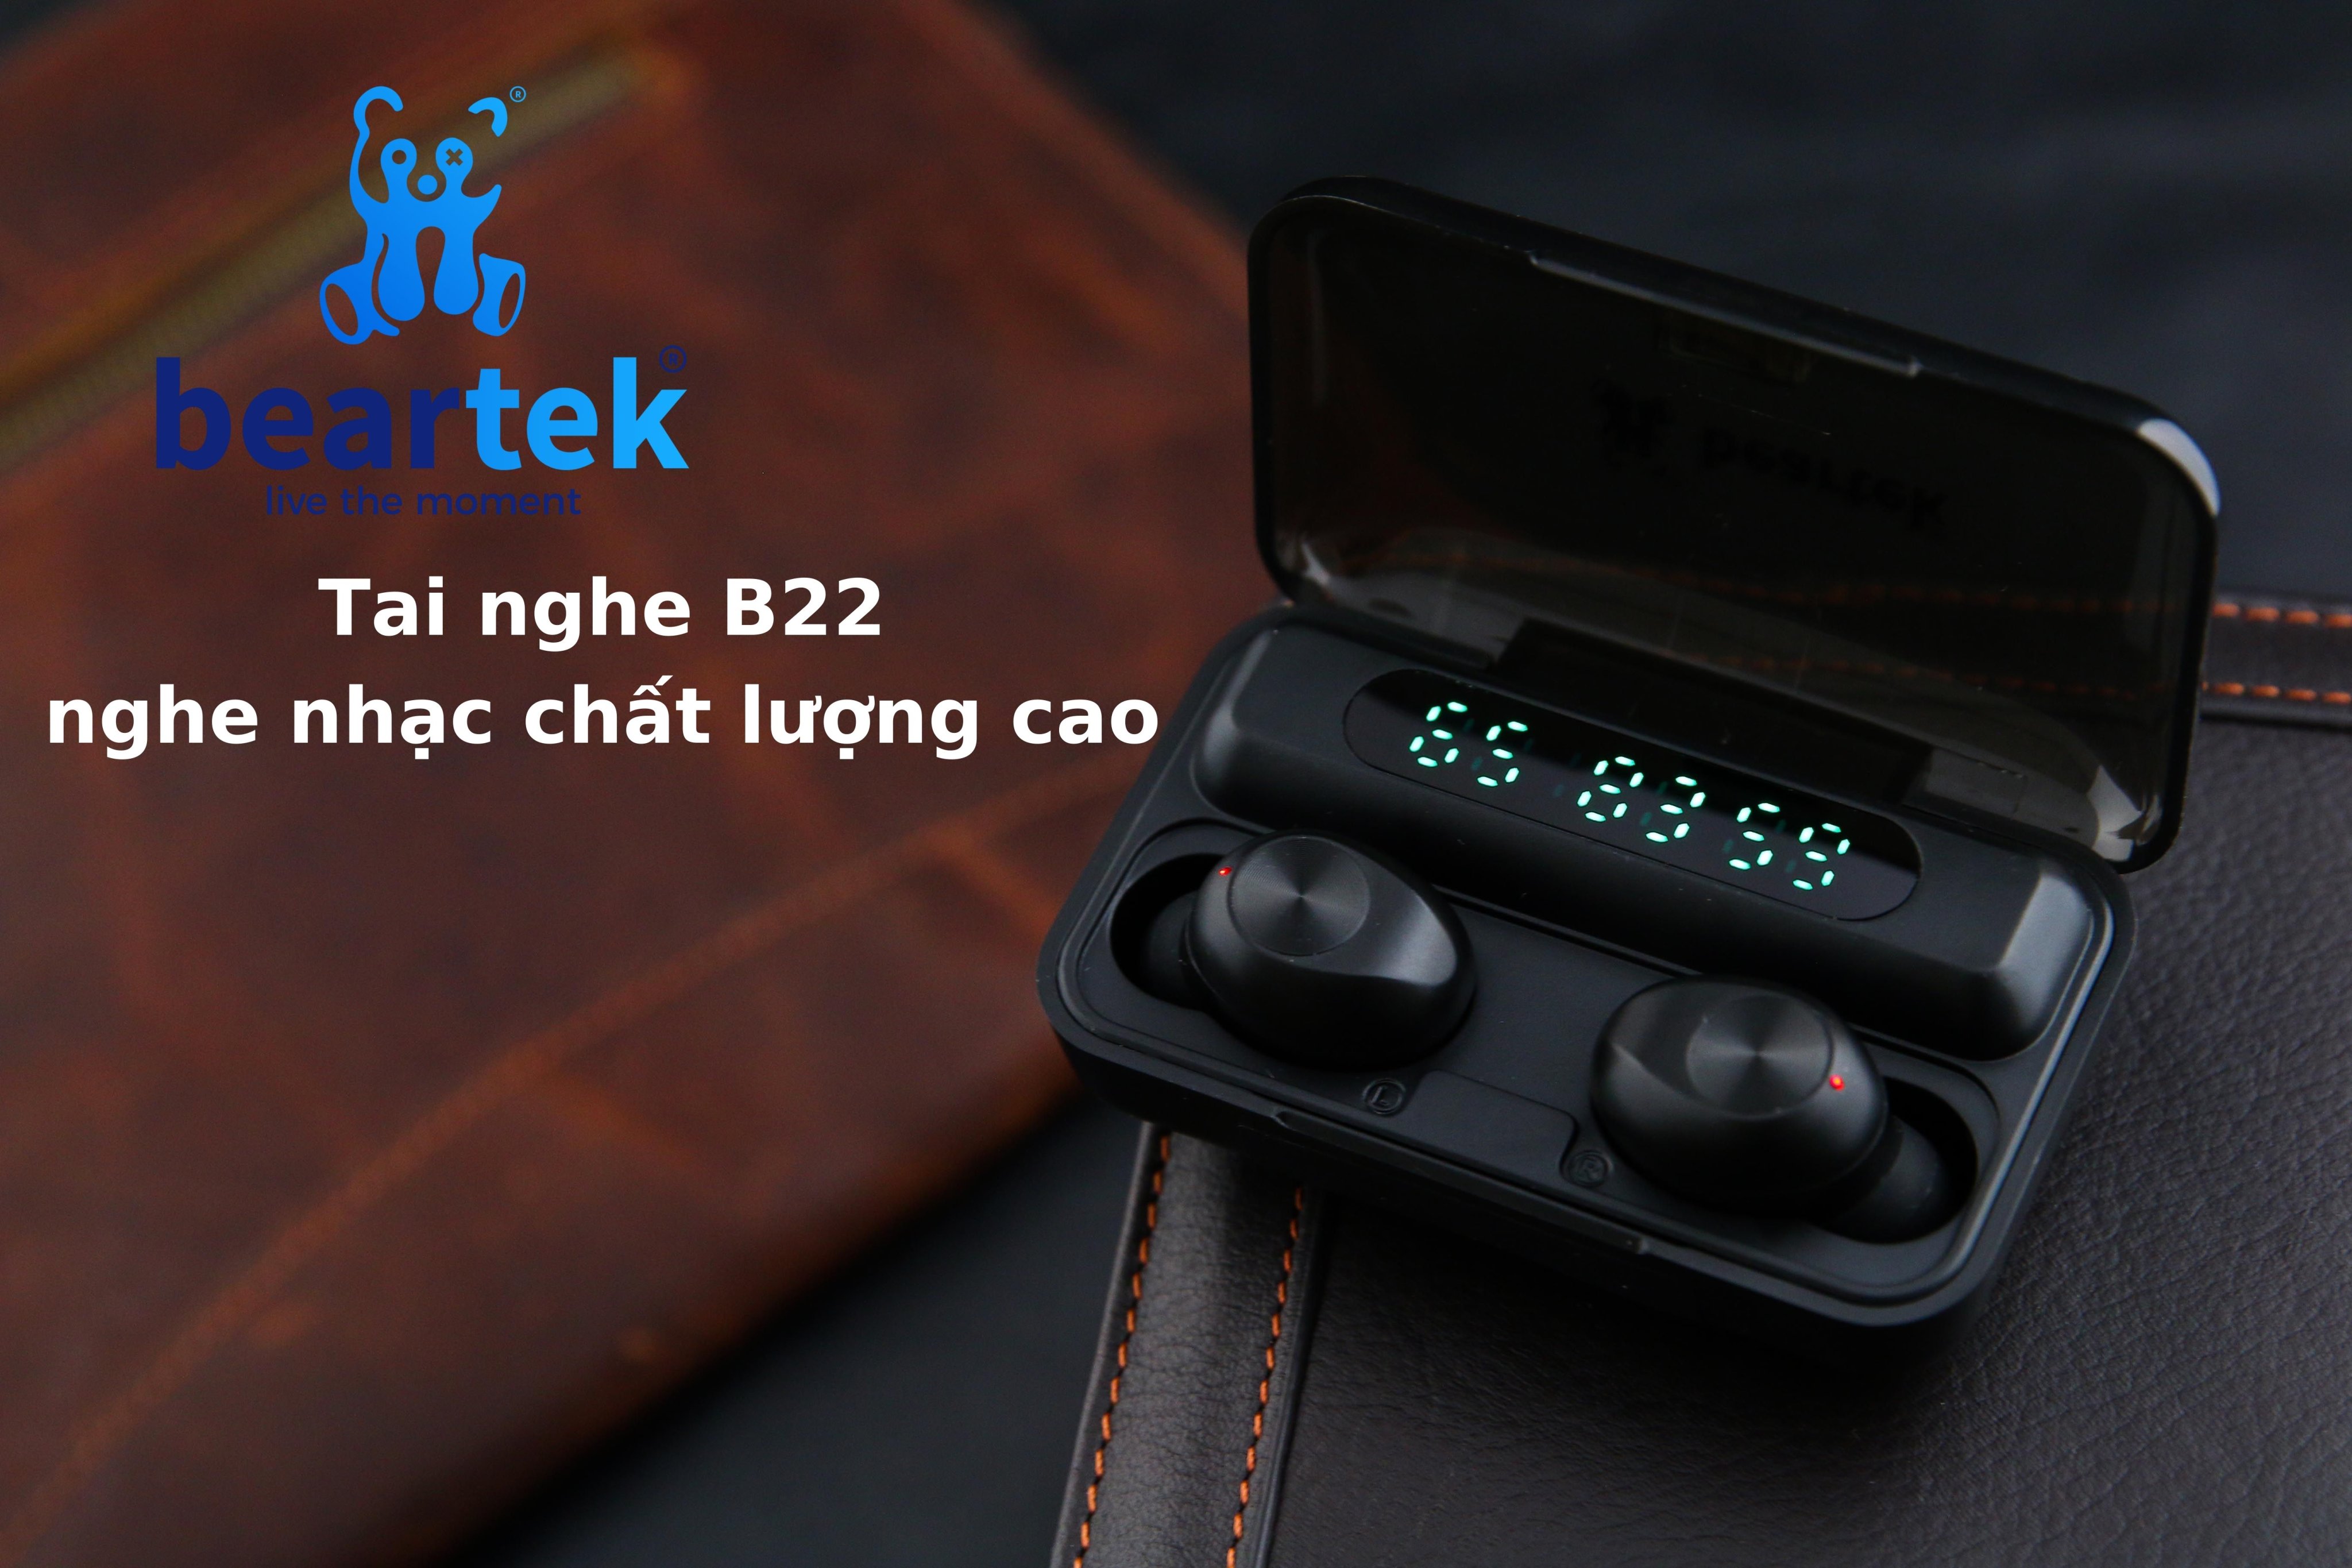 Tai nghe không dây bluetooth Beartek B22 bản nâng cấp hiển thị % pin – Cảm ứng dừng bật nhạc – Thiết kế thông minh giúp không bị đau tai khi sử dụng thời gian dài – Hàng nhập khẩu